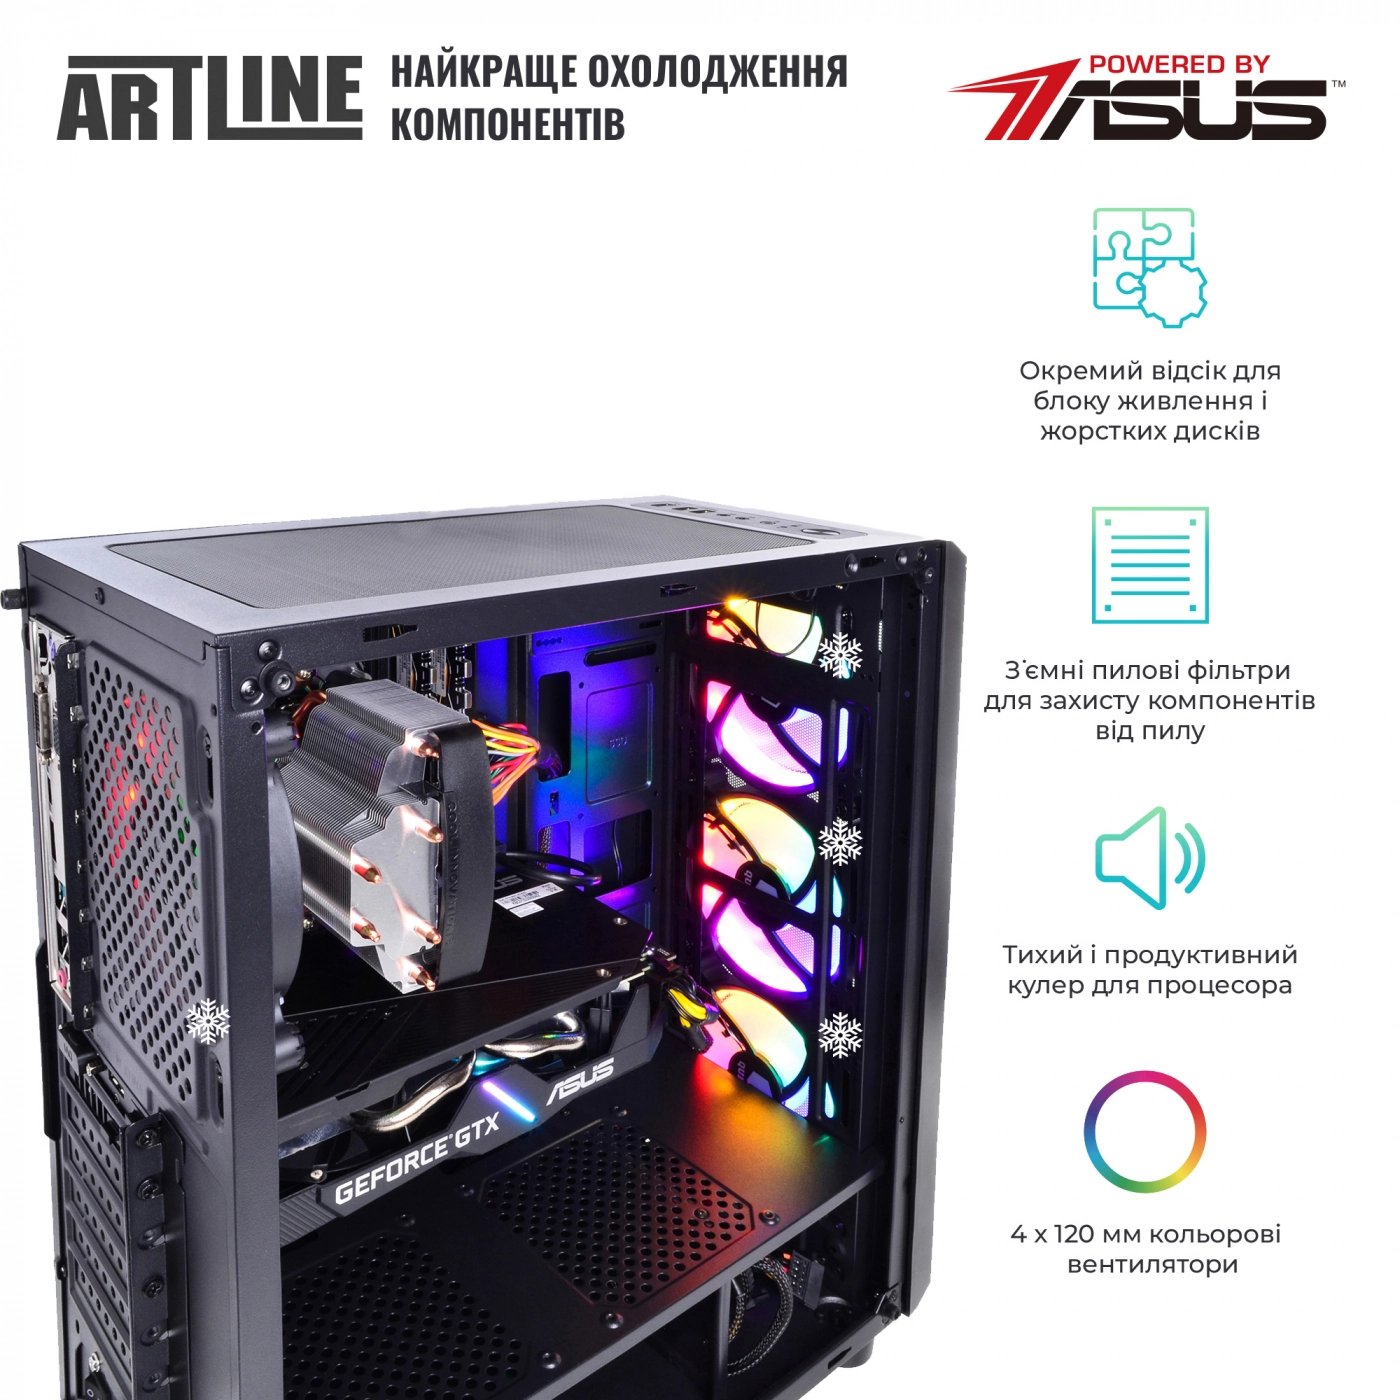 Купить Компьютер ARTLINE Gaming X47v43 - фото 3